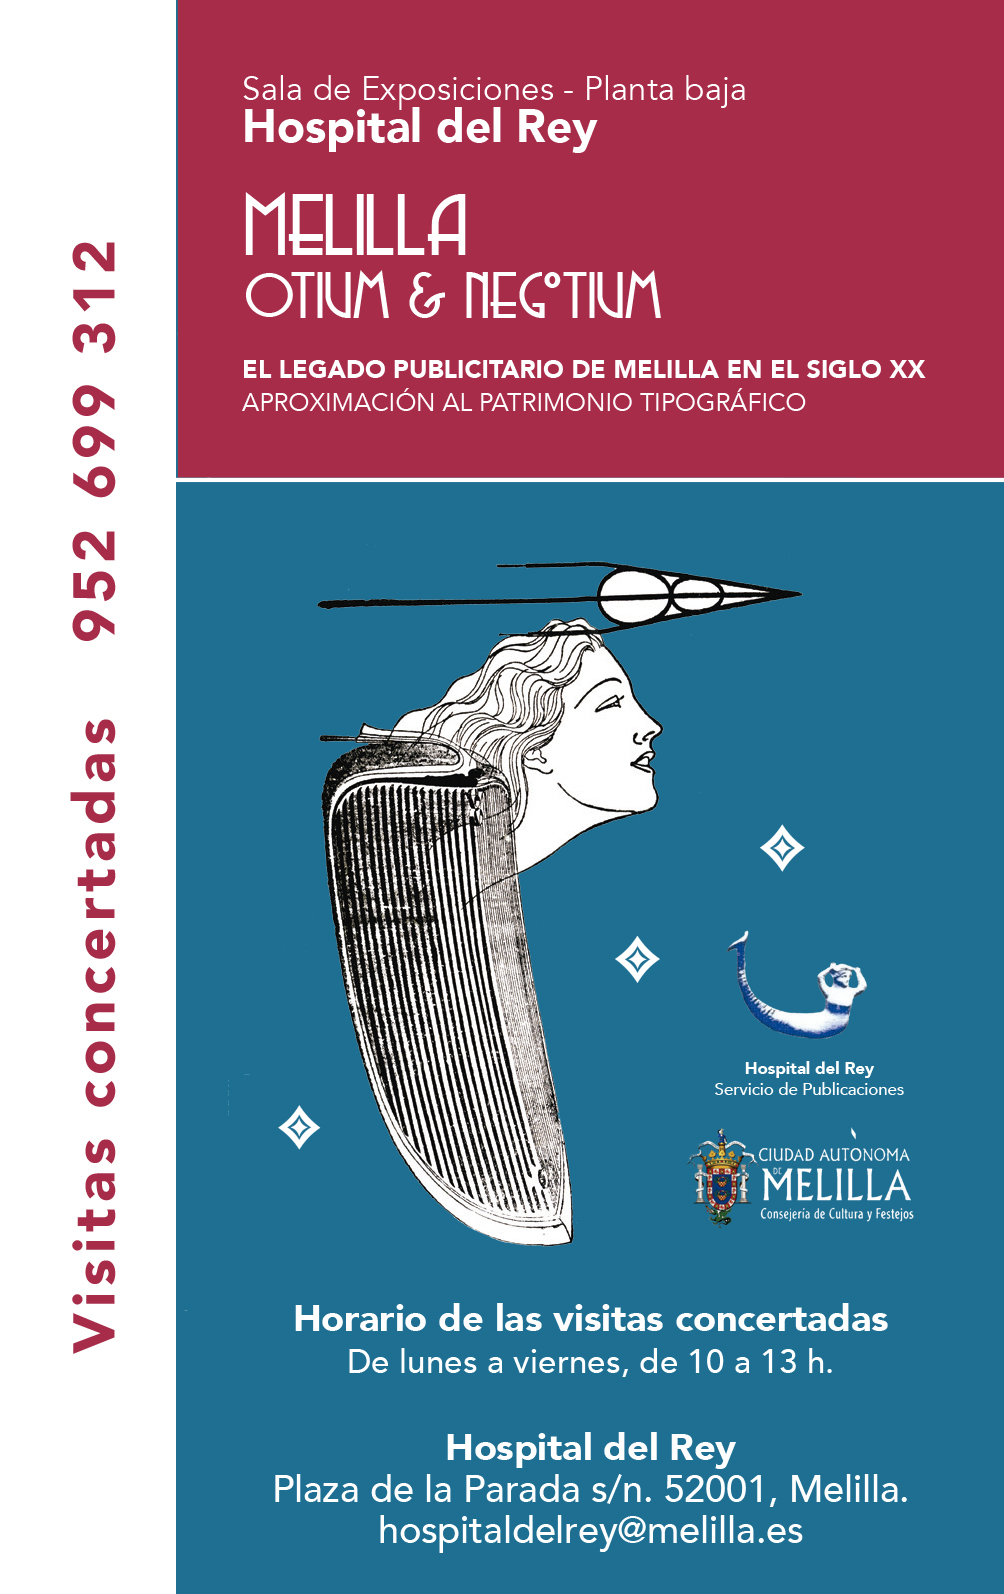 Melilla Otium & Negotium - El legado publicitario de Melilla en el siglo XX